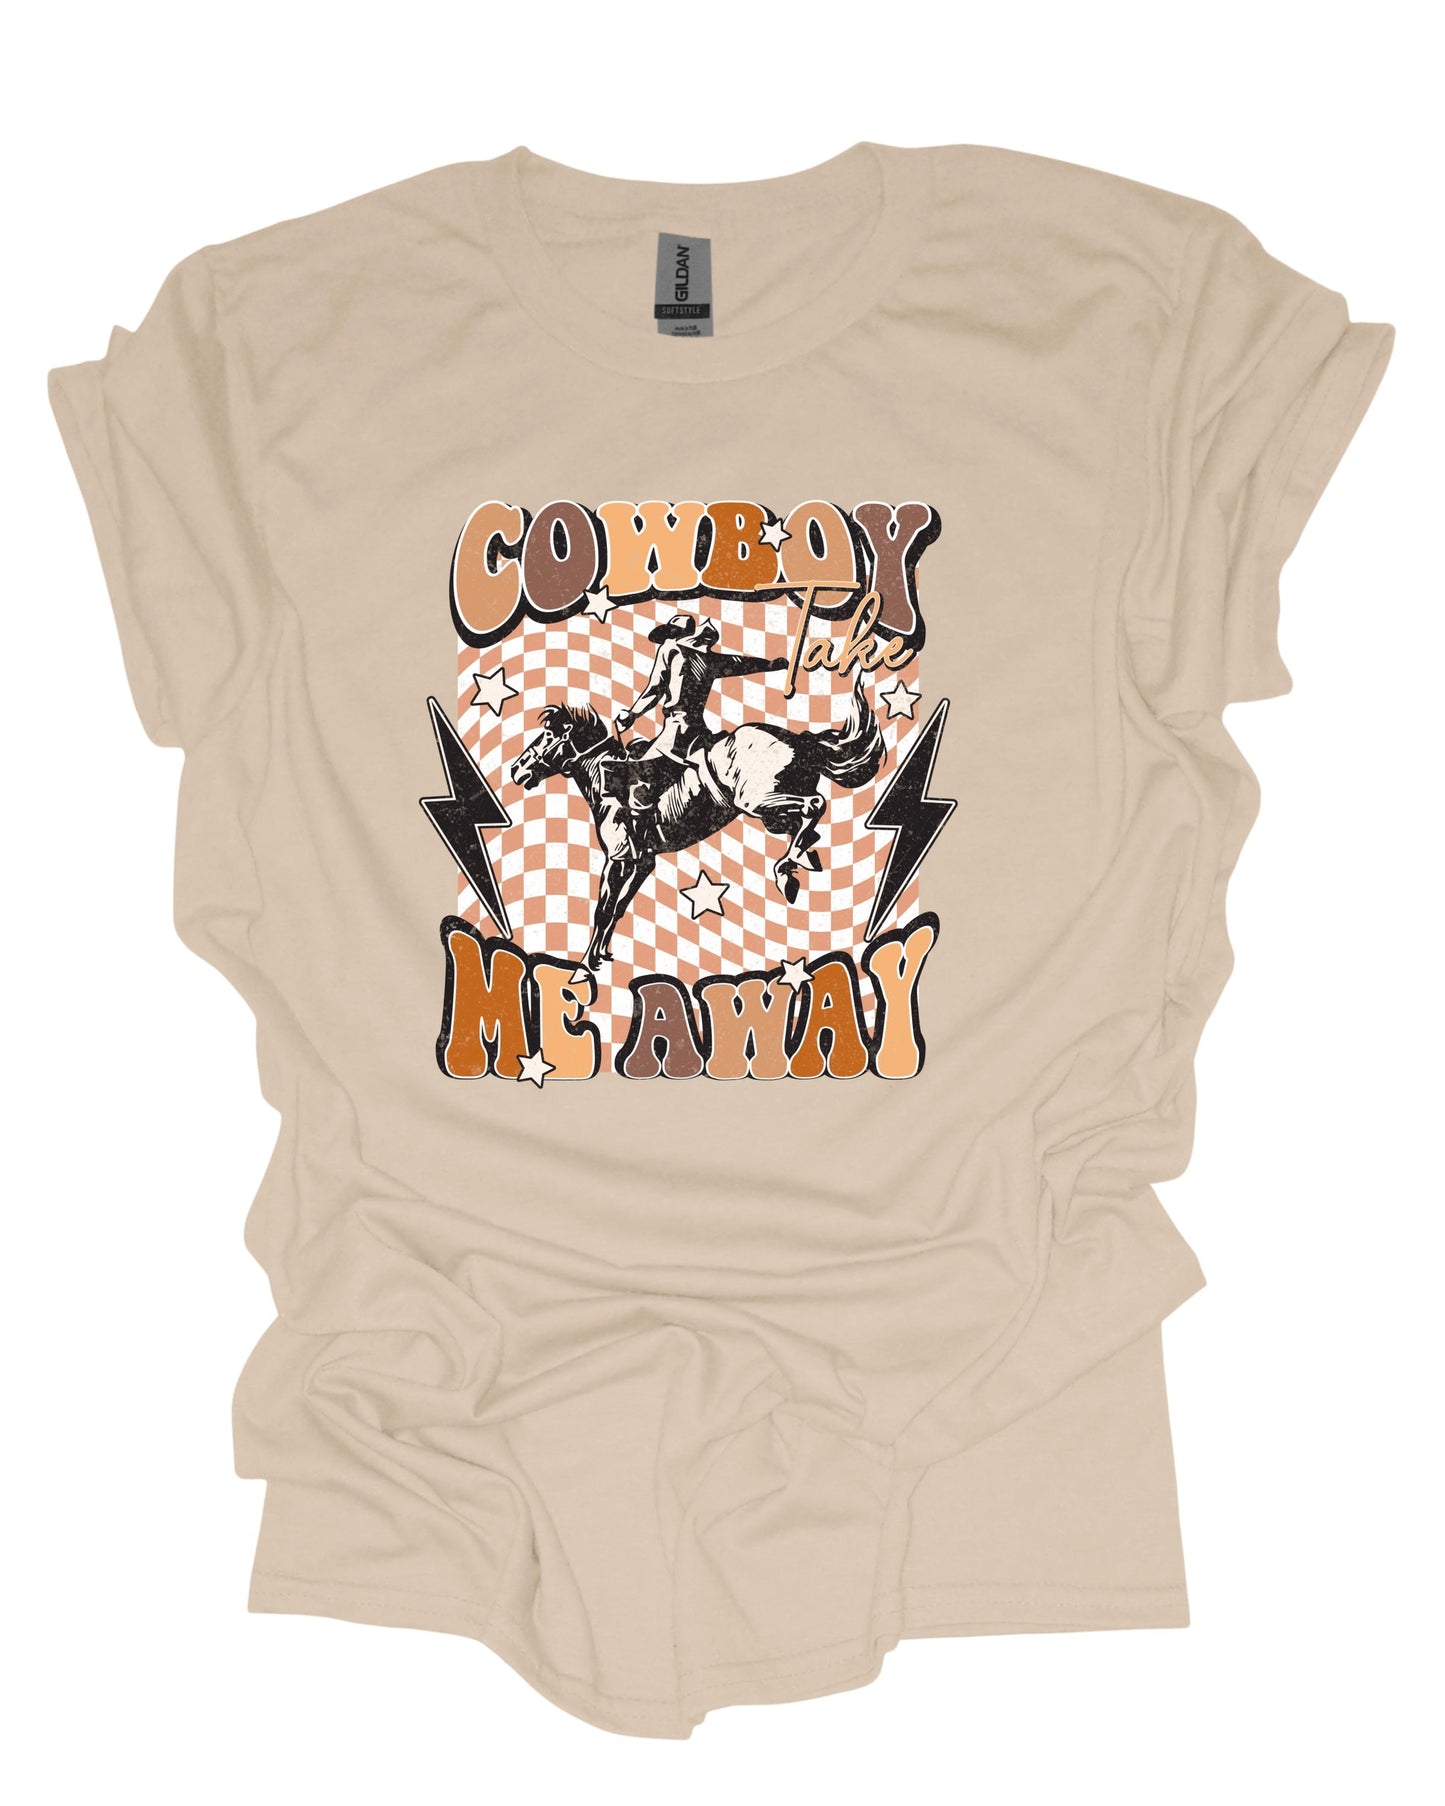 Cowboy take me away - T-Shirt